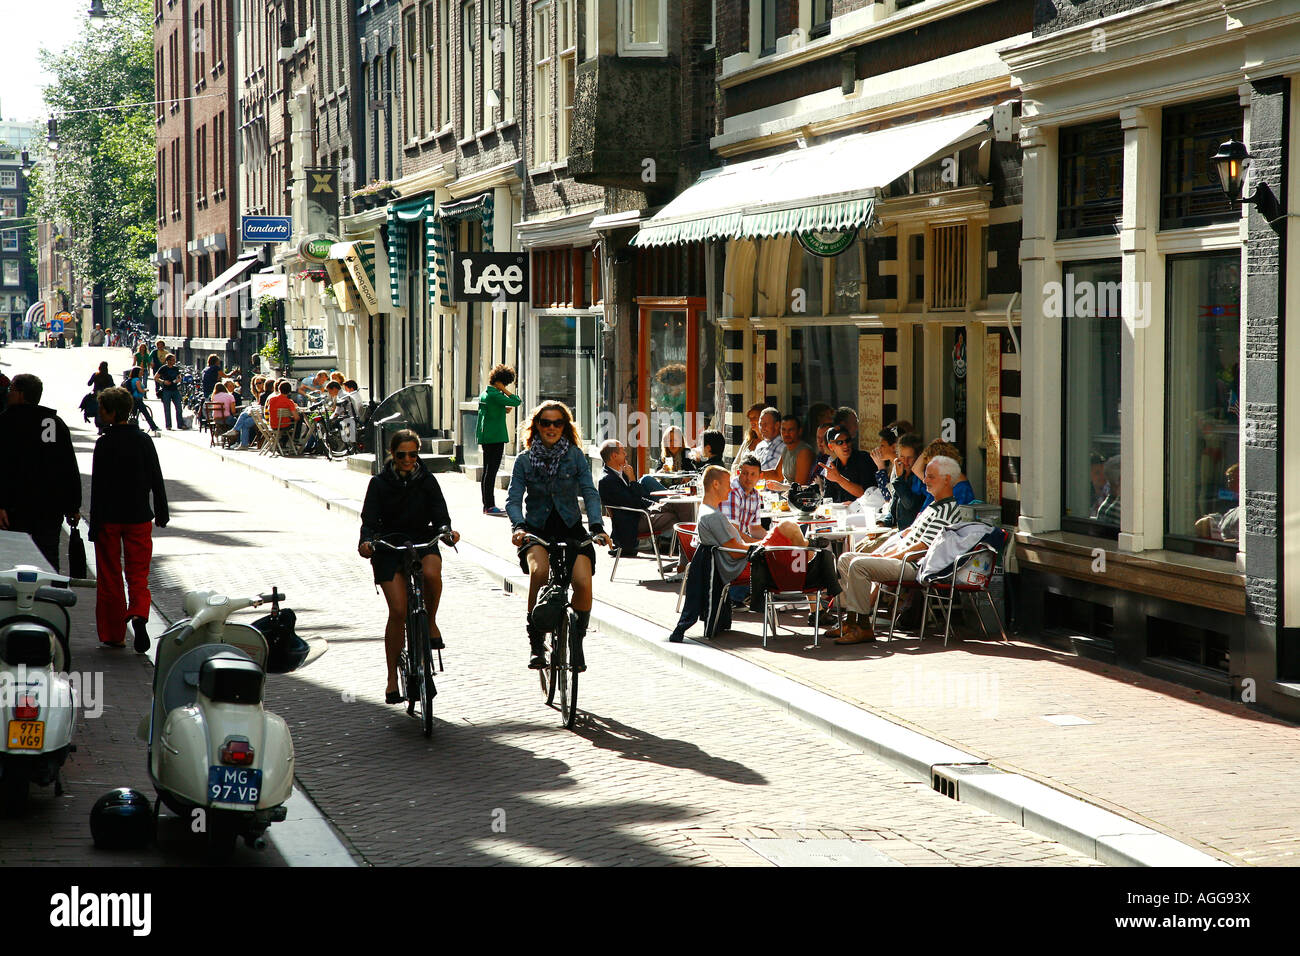 Raadhuisstraat, partie de la '9' dans les rues avec des magasins et cafés dans le quartier du Jordaan Amsterdam Pays-Bas Banque D'Images